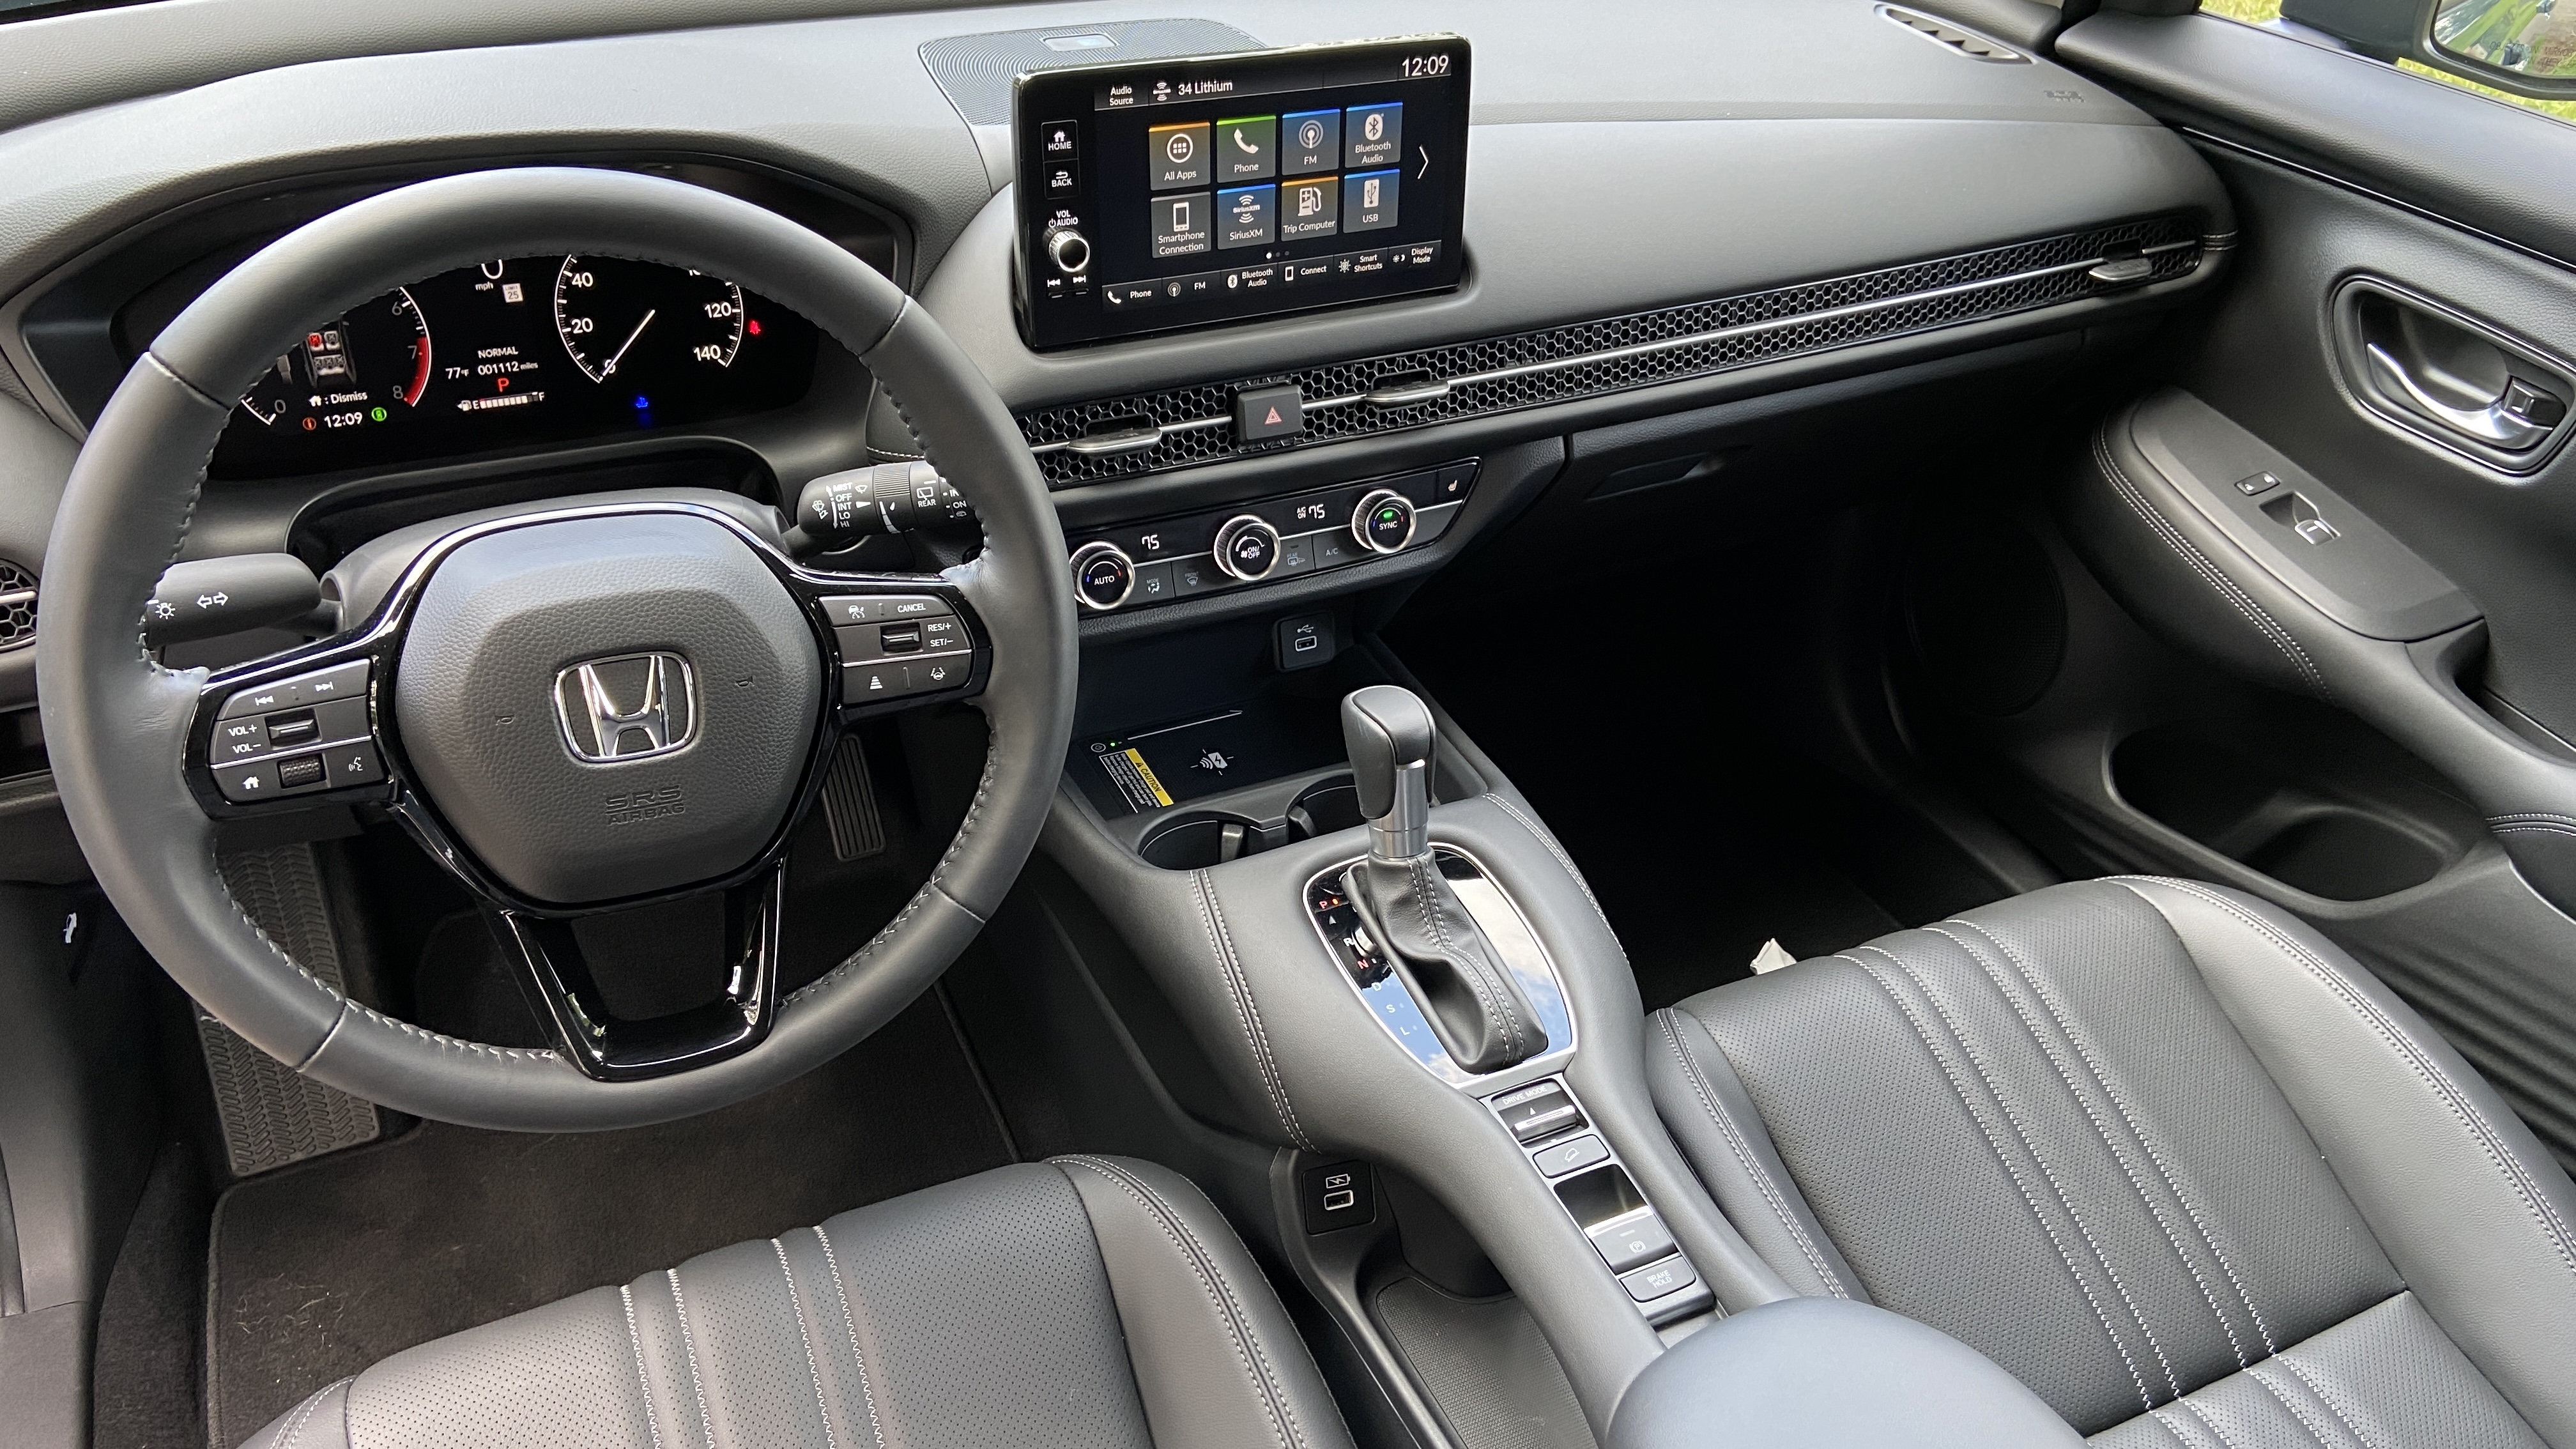 2022 Honda HR-V spy photos show major redesign - Autoblog